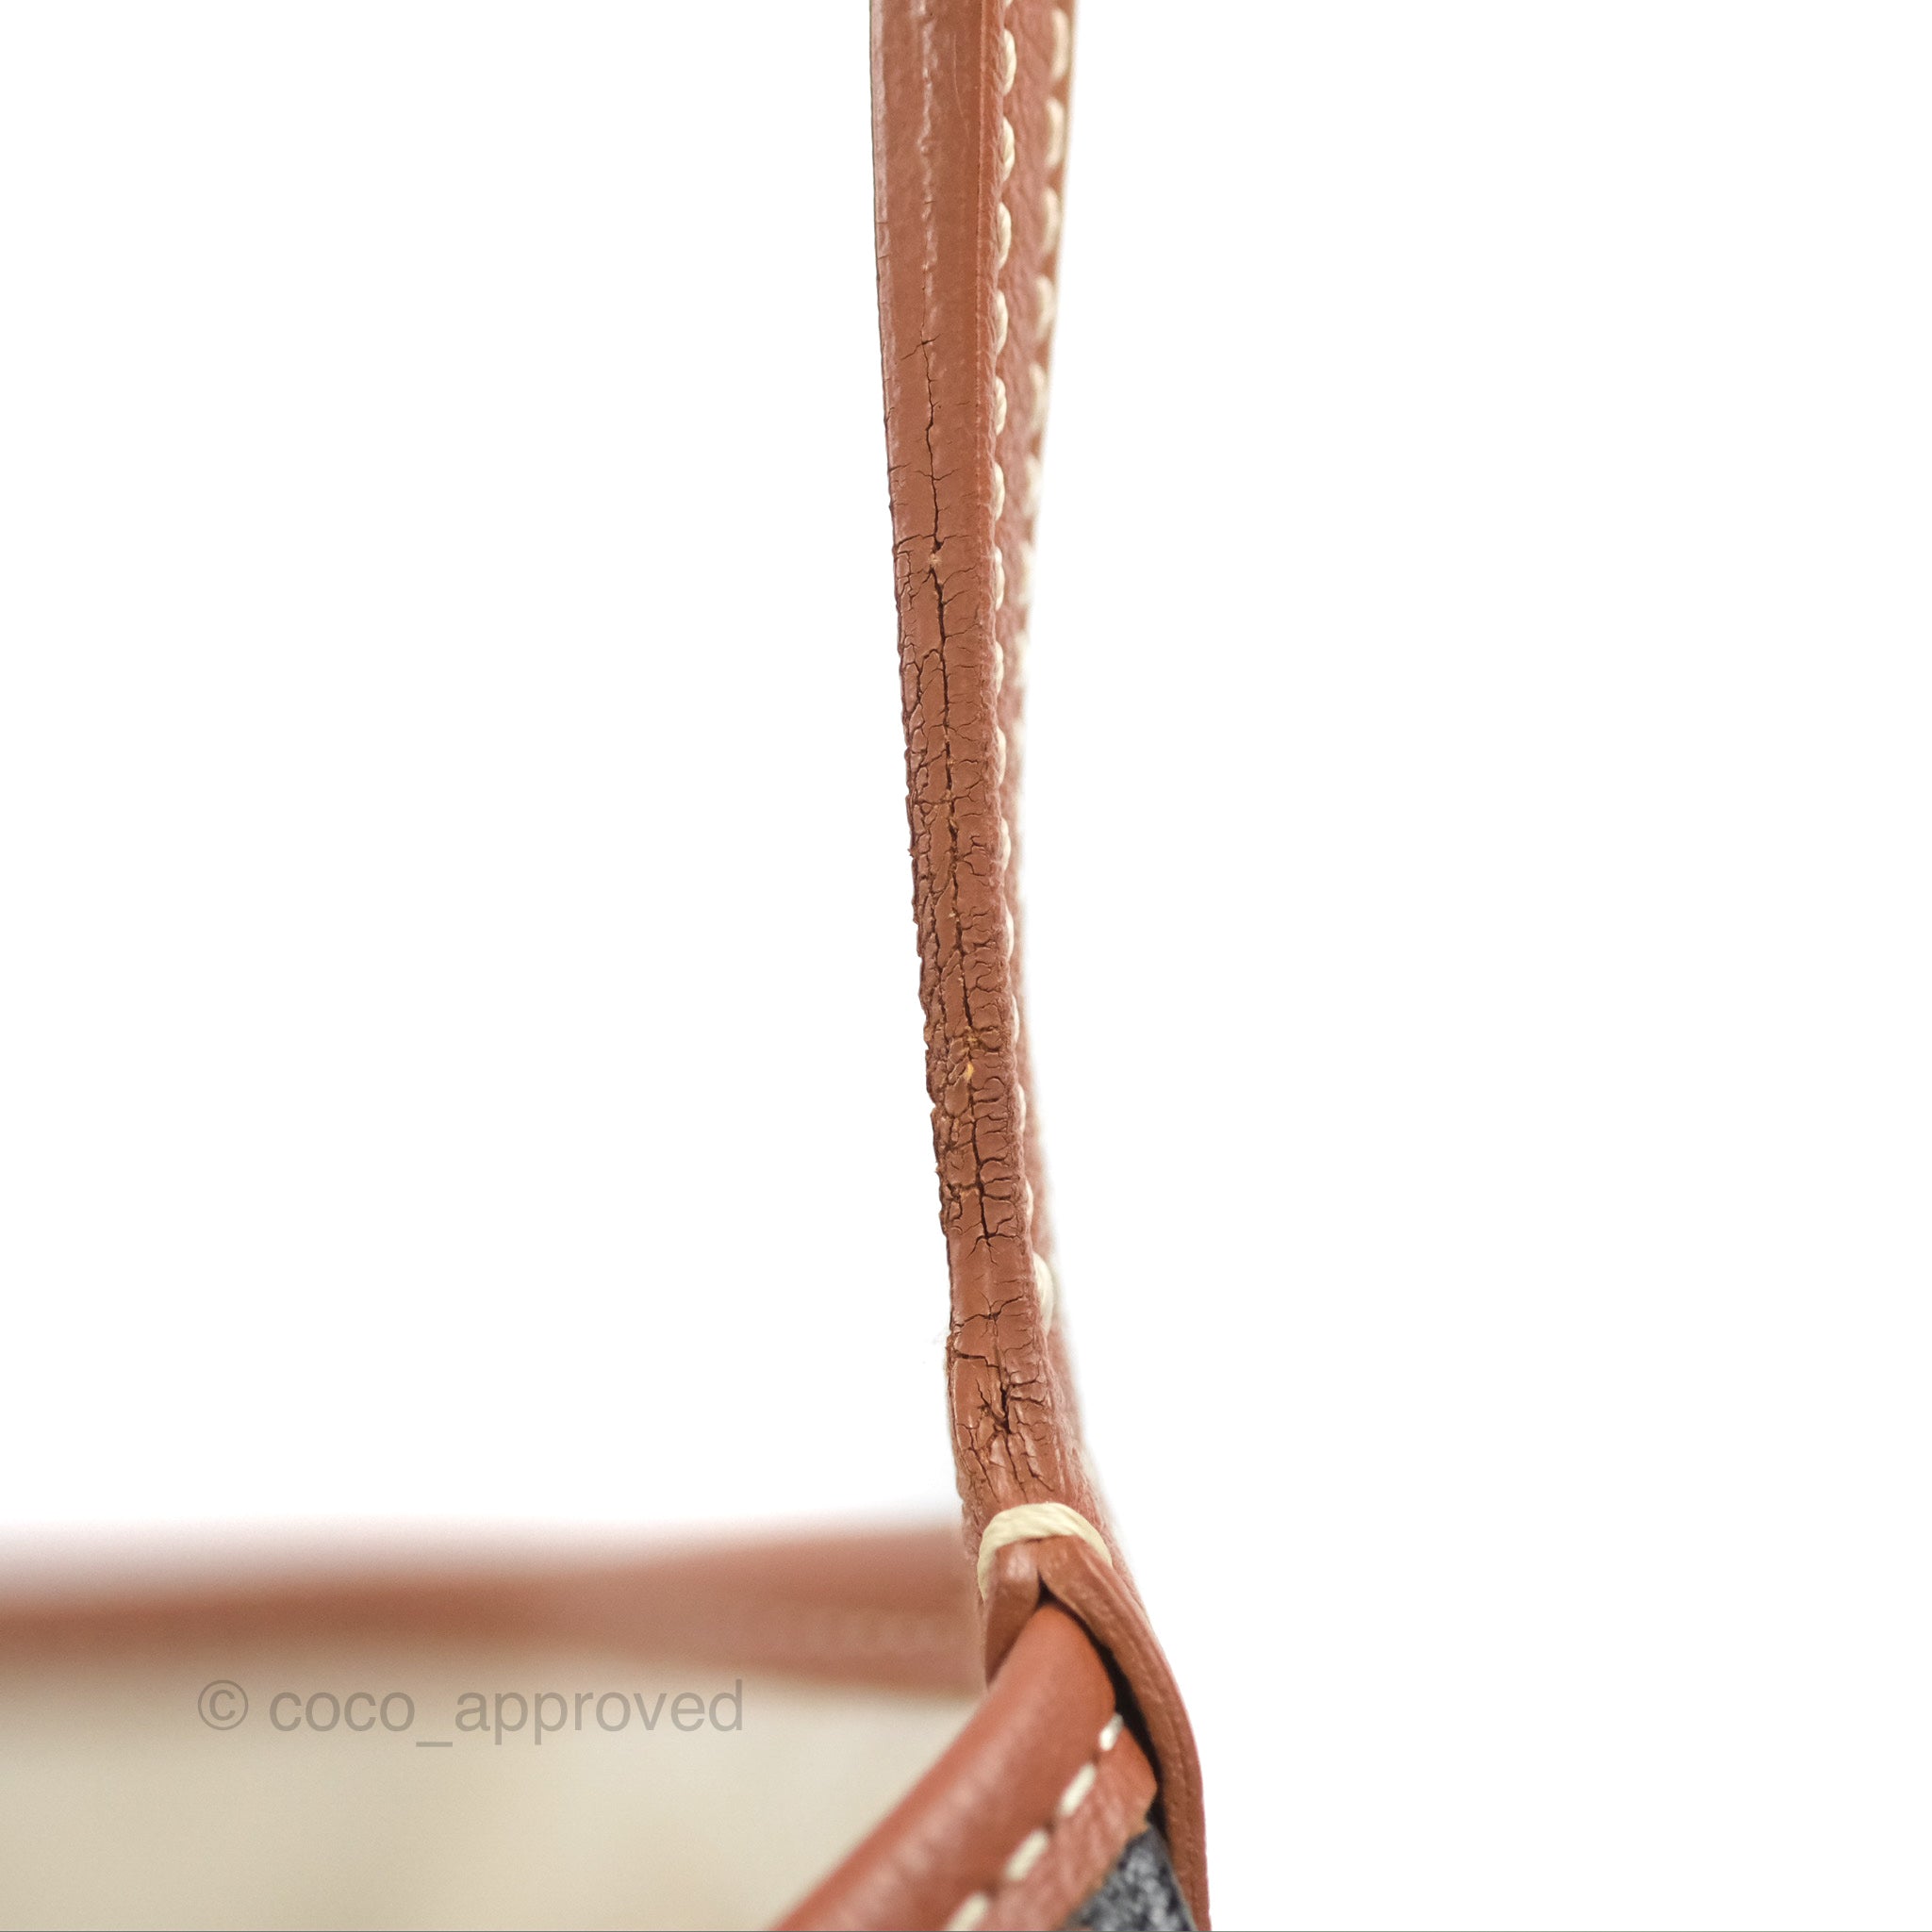 Louis Vuitton Comme Des Garçons Girl Tote Bags Backpack 377674, UhfmrShops